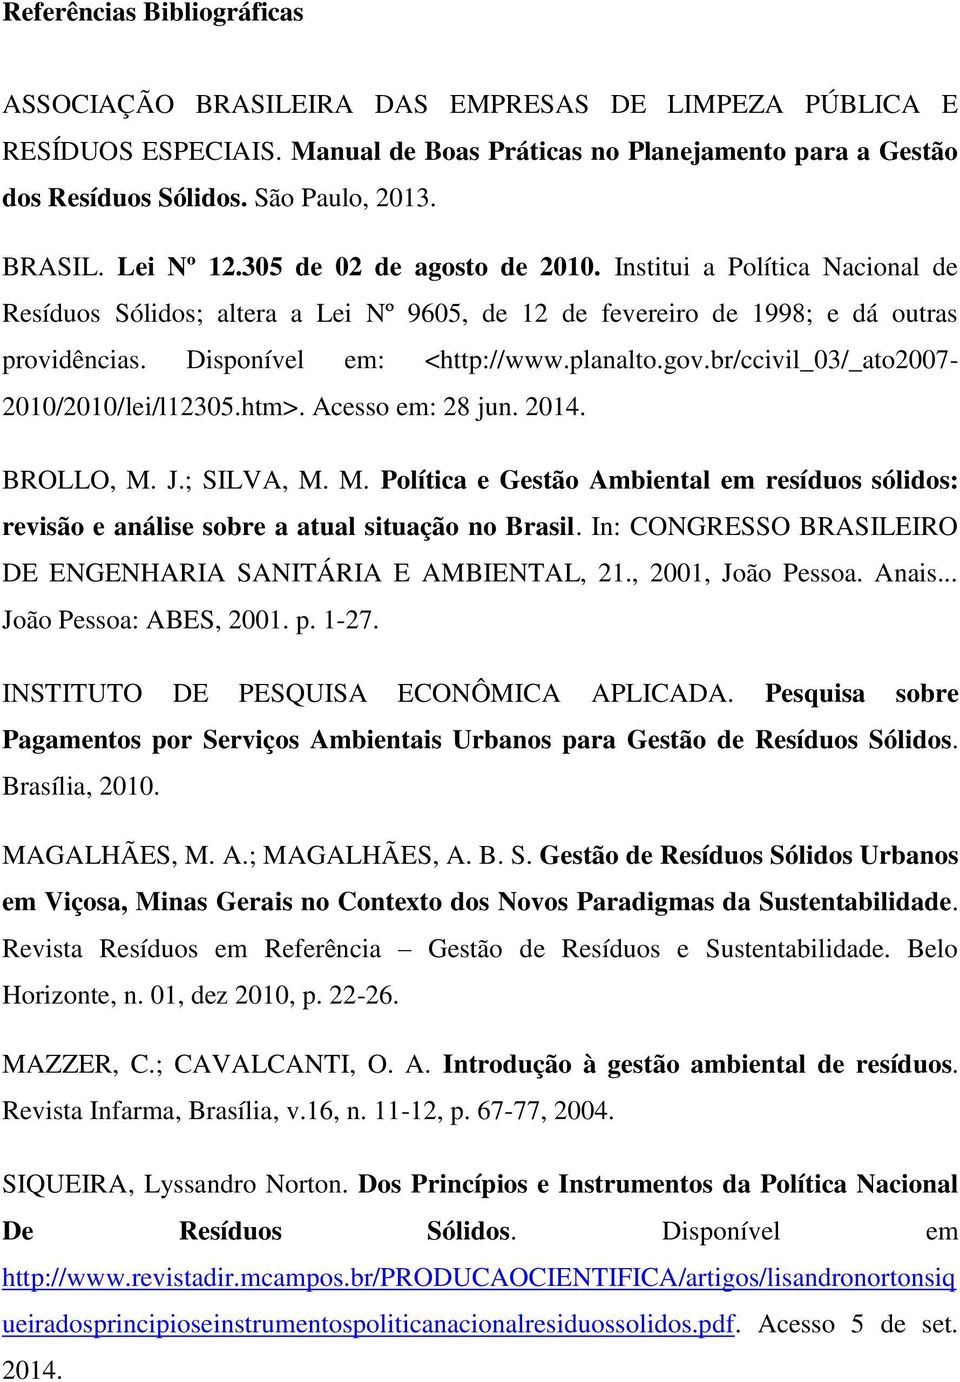 planalto.gov.br/ccivil_03/_ato2007-2010/2010/lei/l12305.htm>. Acesso em: 28 jun. 2014. BROLLO, M. J.; SILVA, M. M. Política e Gestão Ambiental em resíduos sólidos: revisão e análise sobre a atual situação no Brasil.